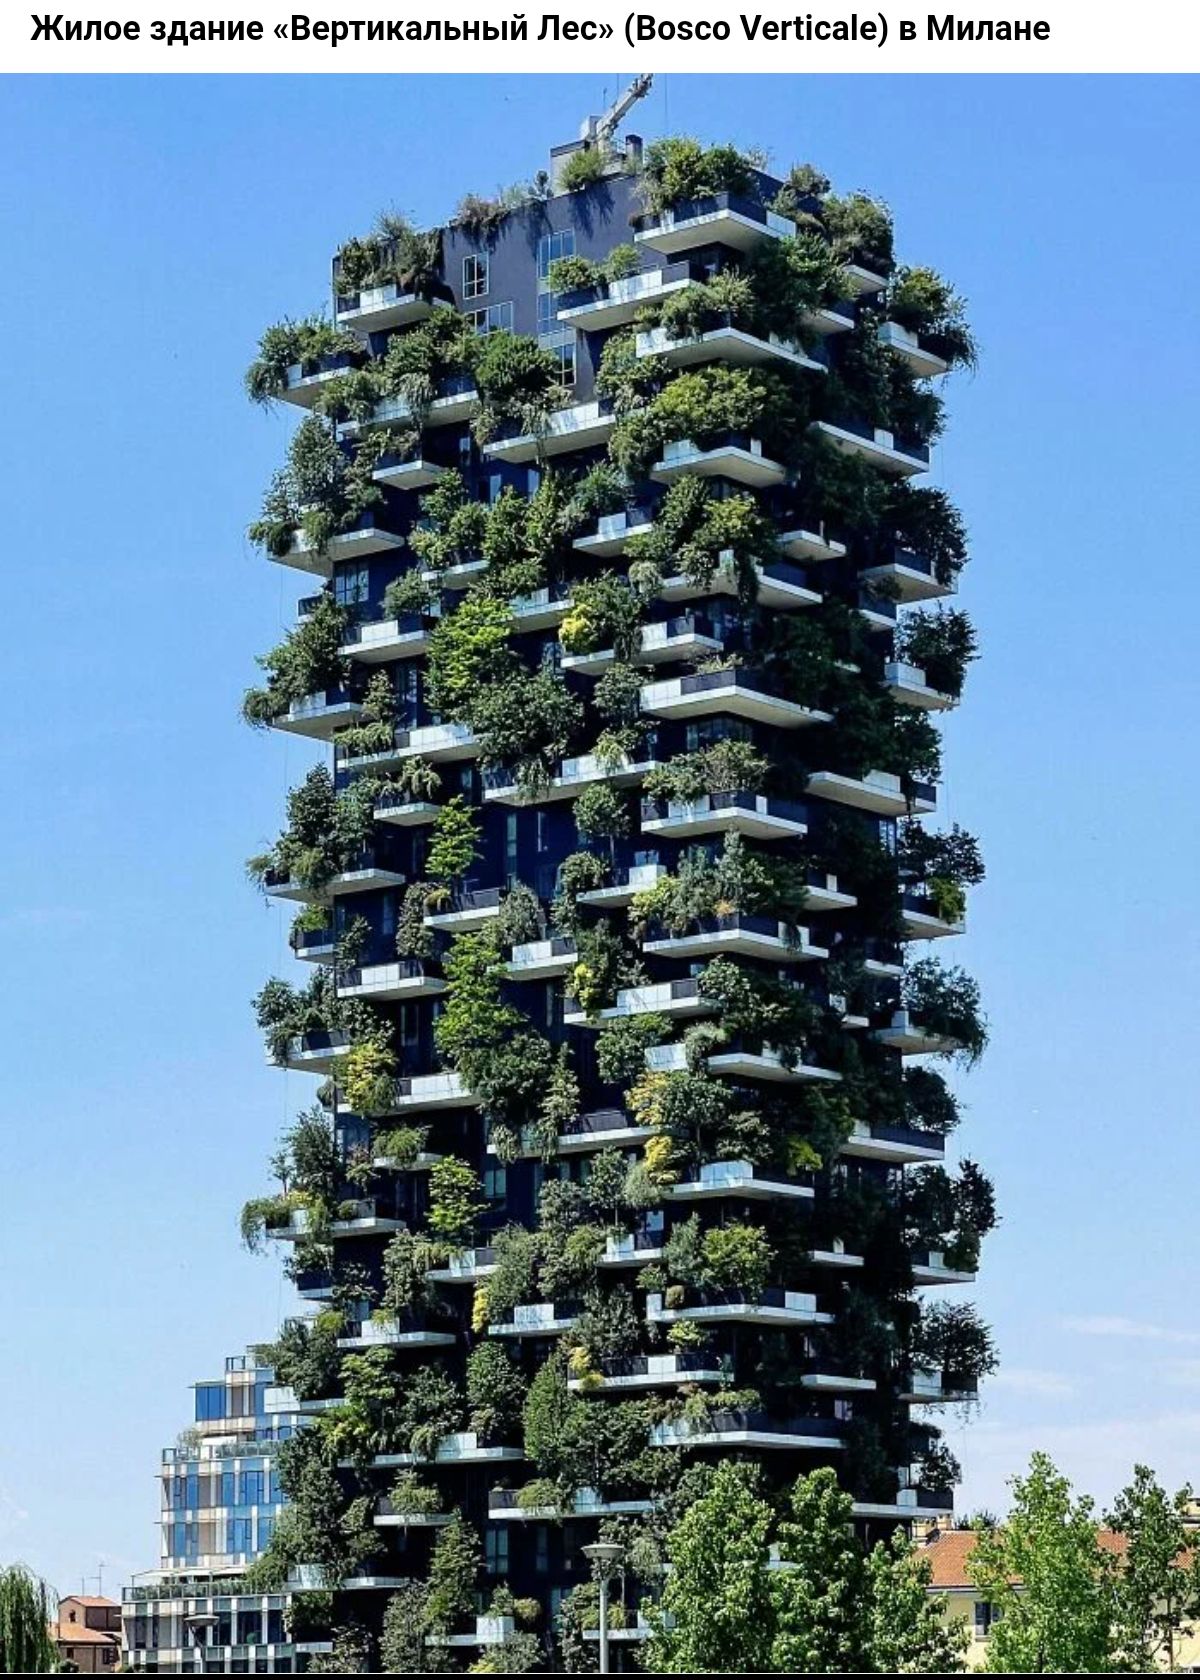 Жилое здание вертикальиыи де Биэсо черноты в Милане